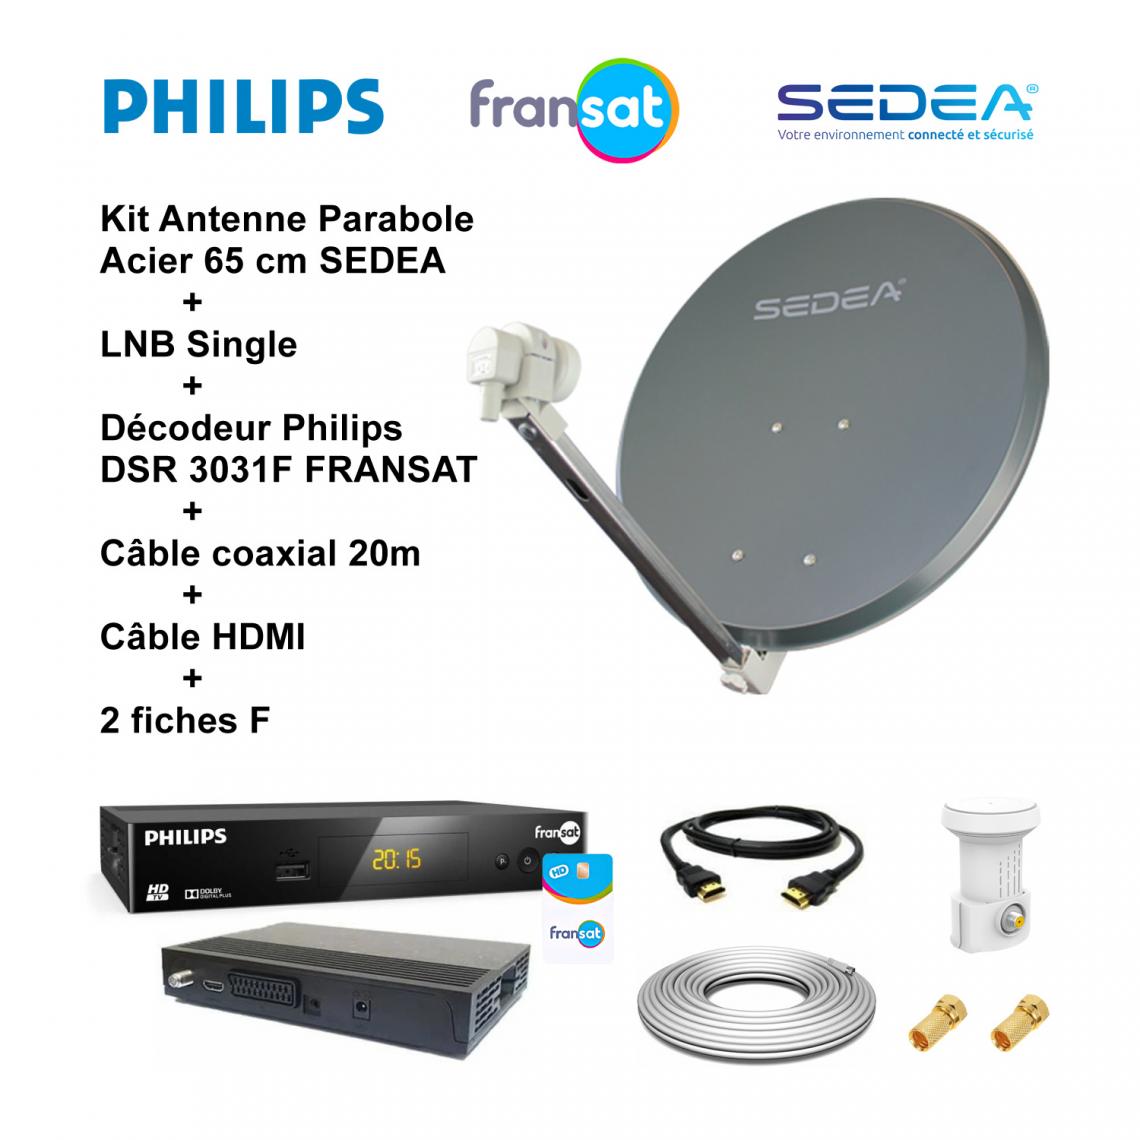 Sedea - Kit Antenne Parabole Acier 65 cm 36,5 dB Anthracite SEDEA + LNB Single 0,1 dB Full HD 4K Ultra HD + Décodeur Philips DSR 3031F FRANSAT + Câble coaxial 20m + Câble HDMI + 2 fiches F - Antennes intérieures